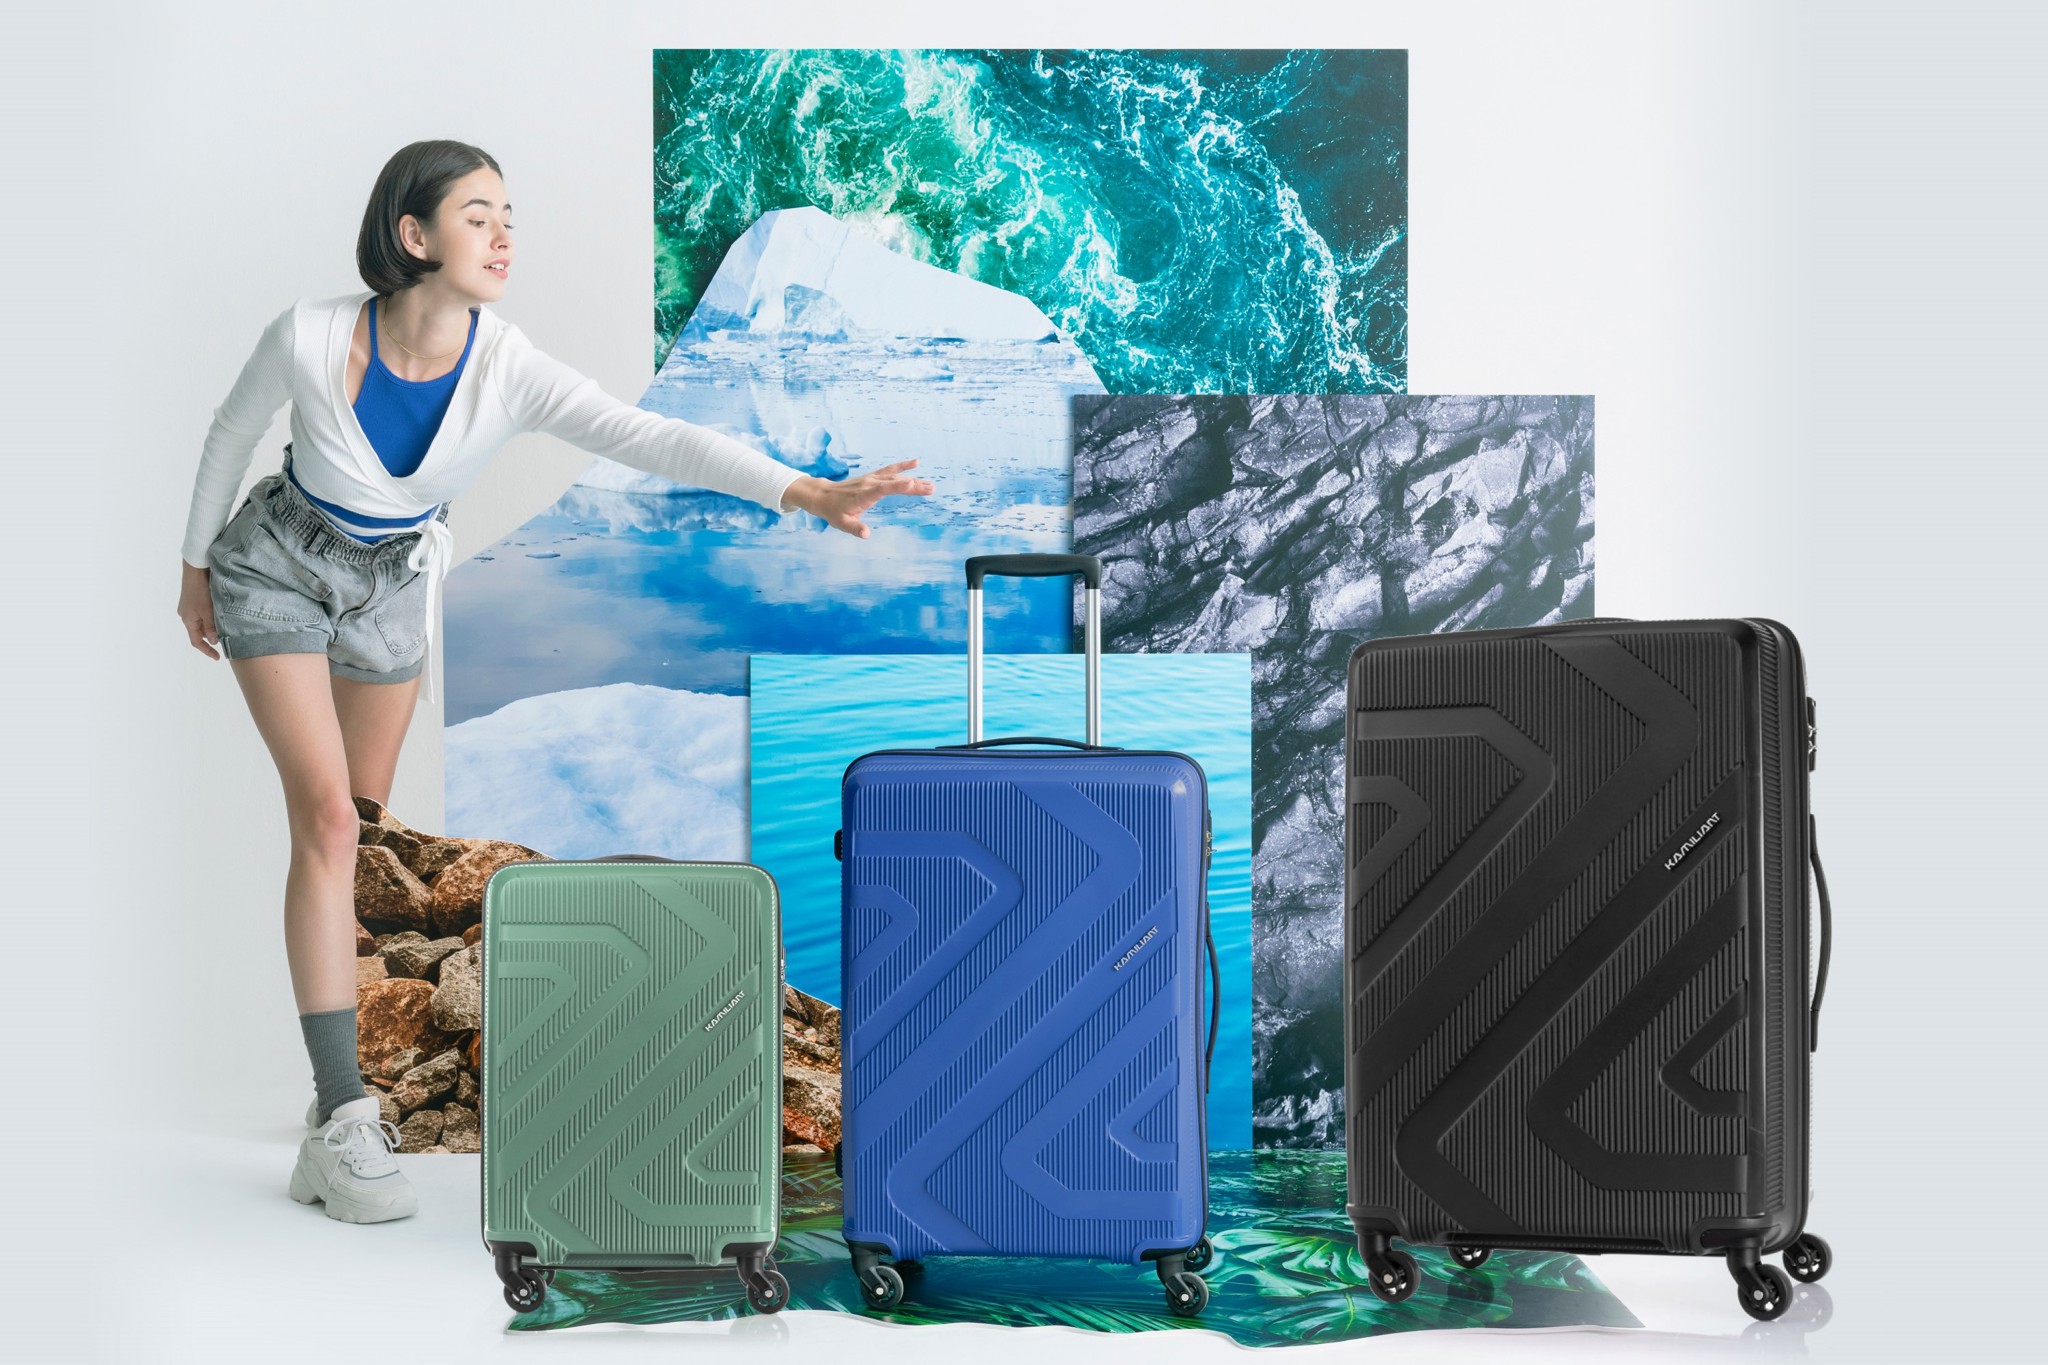 Bỏ túi ngay những bí quyết giúp chuyến du lịch hè của bạn luôn vui